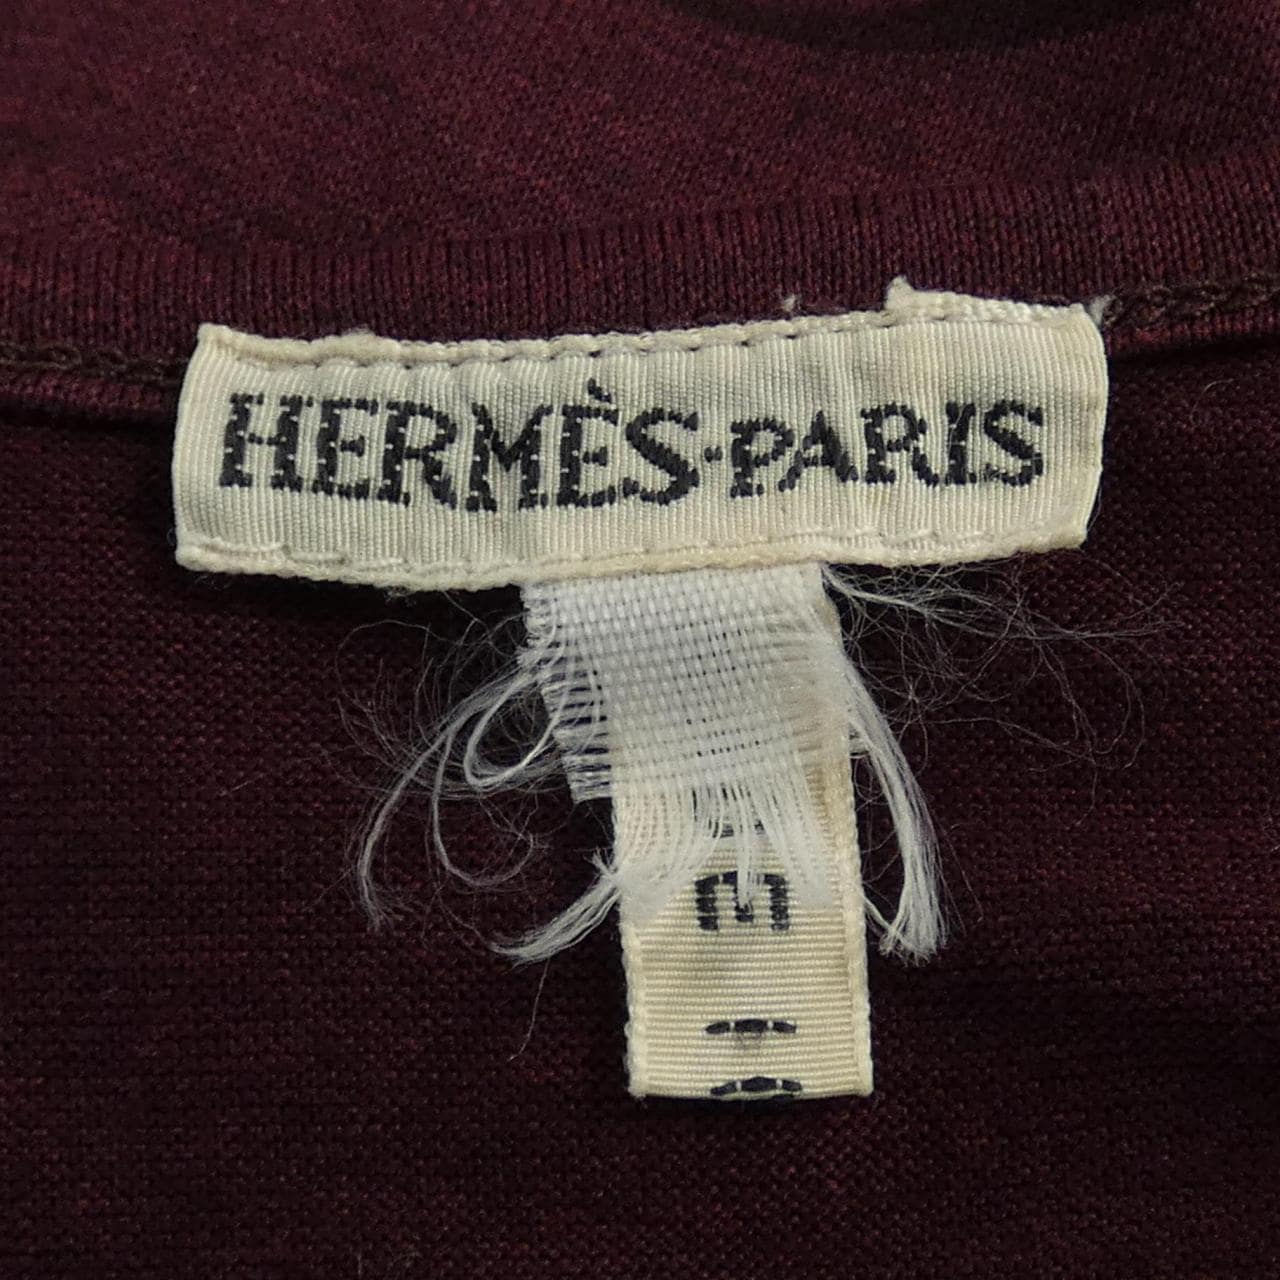 [vintage] HERMES上衣